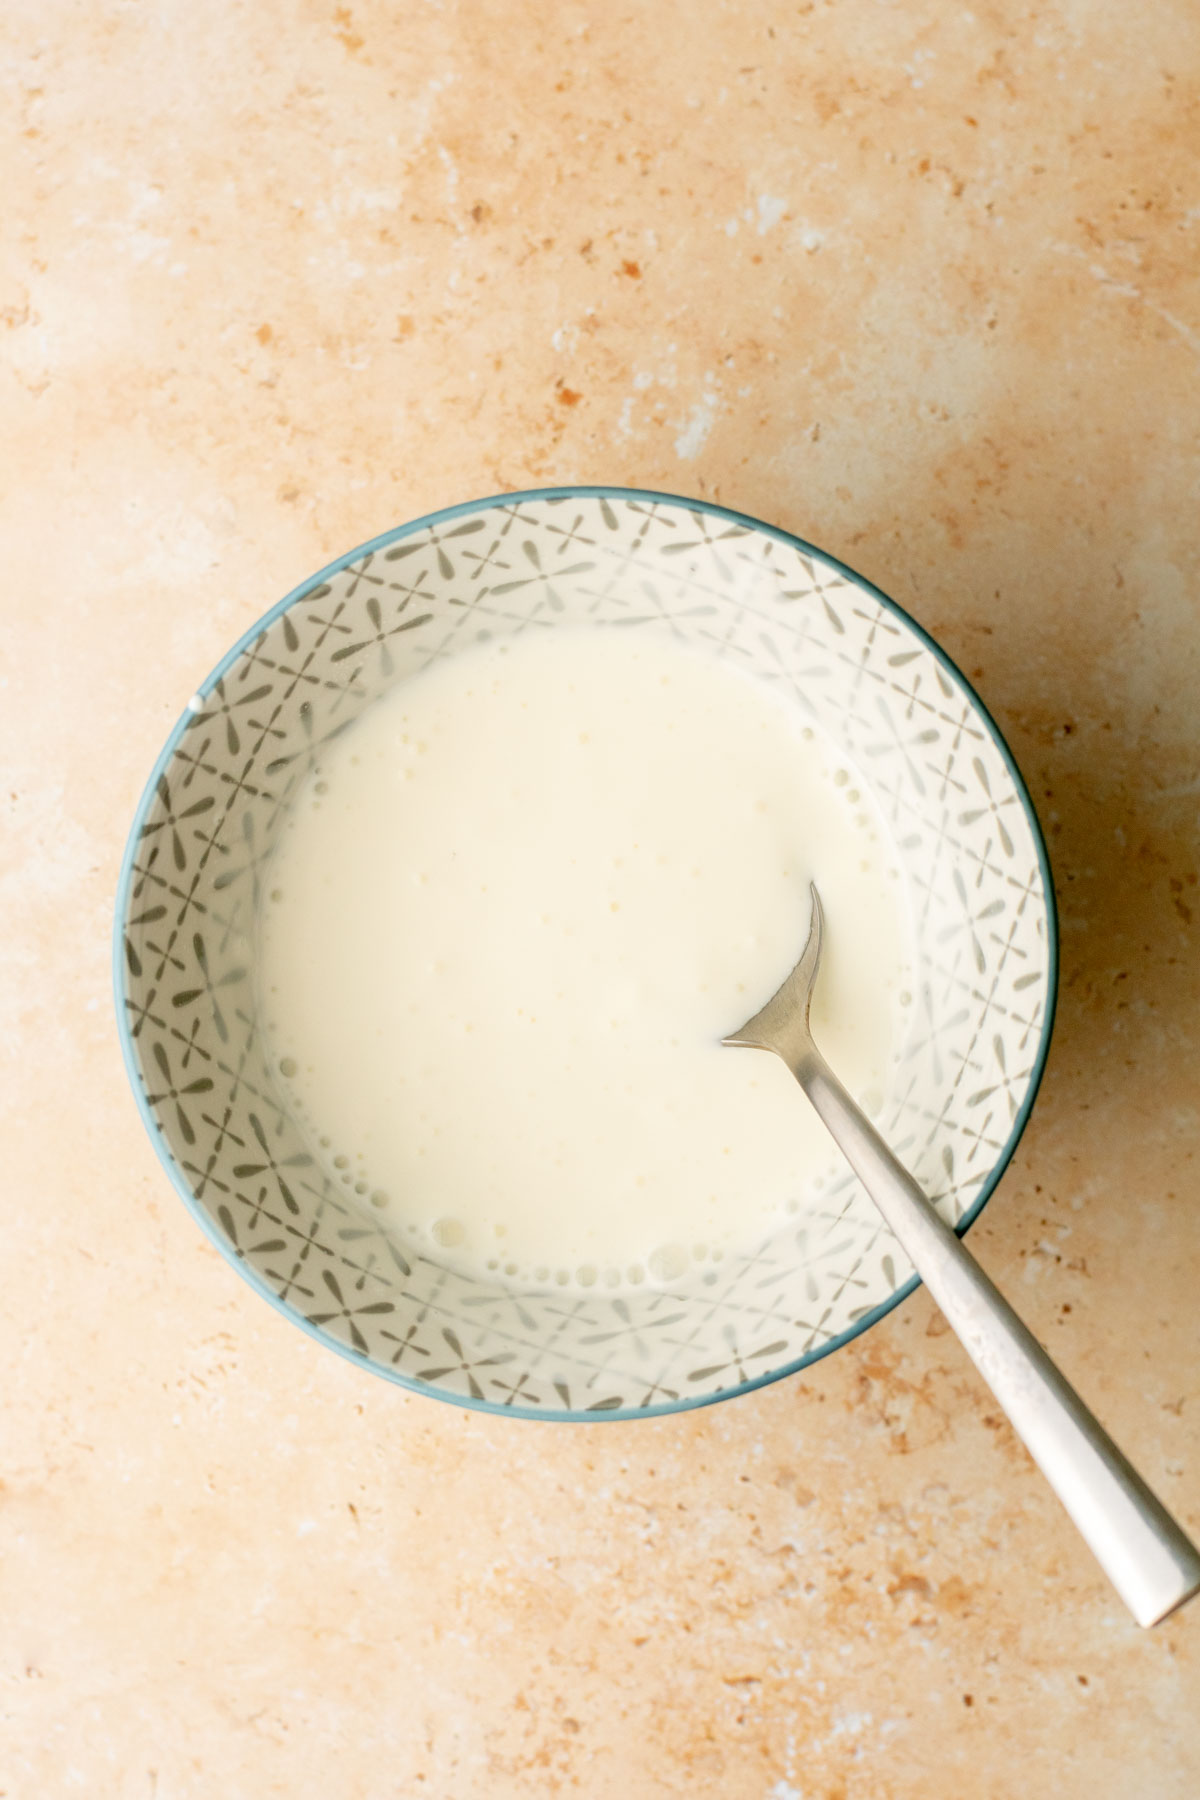 runny yogurt in a bowl